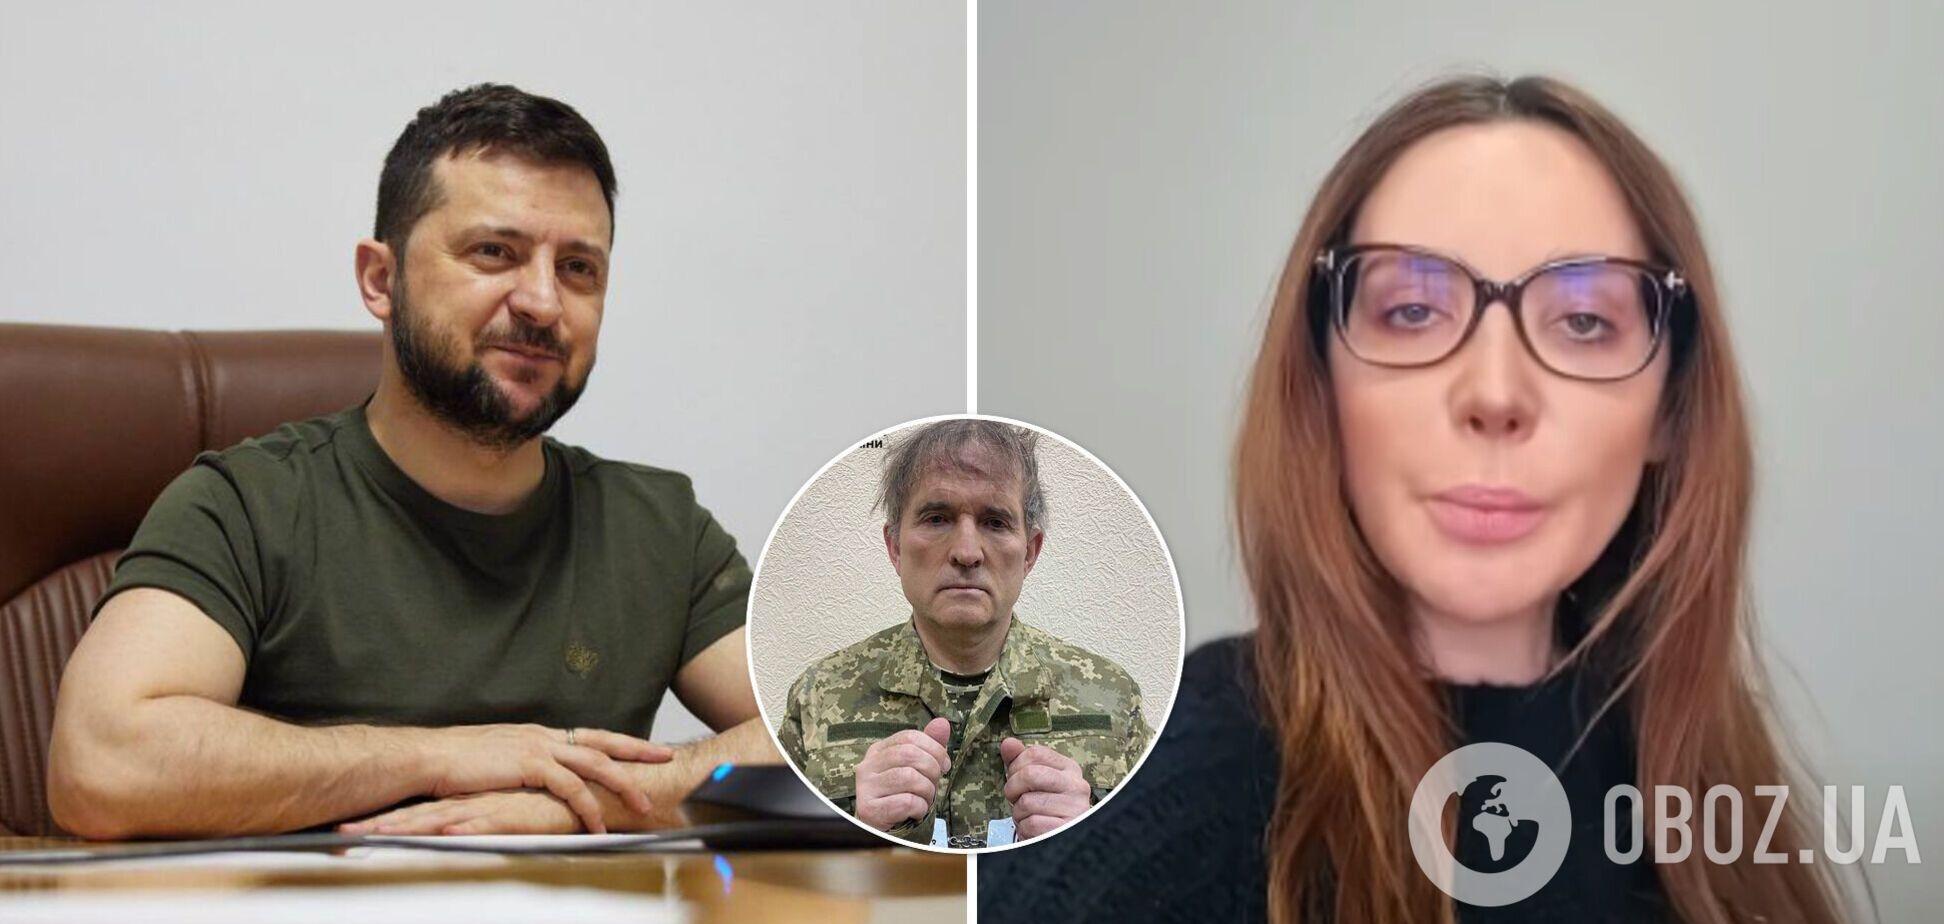 Марченко попросила Зеленського відпустити Медведчука, який 'виступав за мир'. Відео